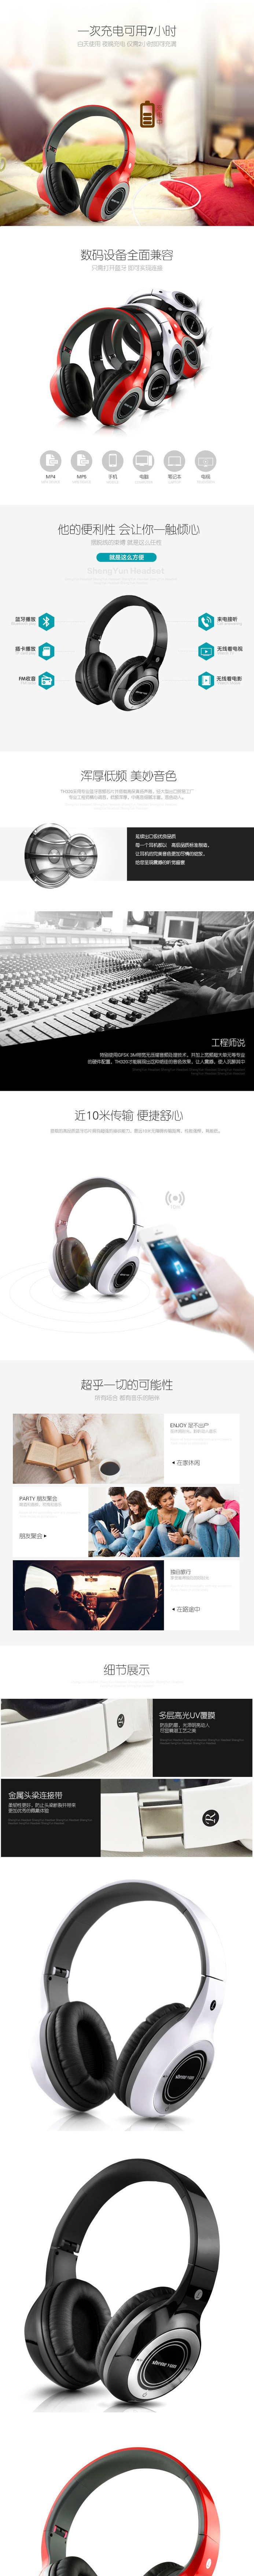 厂家直销圣韵TH320头戴式无线蓝牙耳机手机电脑运动插卡折叠耳麦示例图8